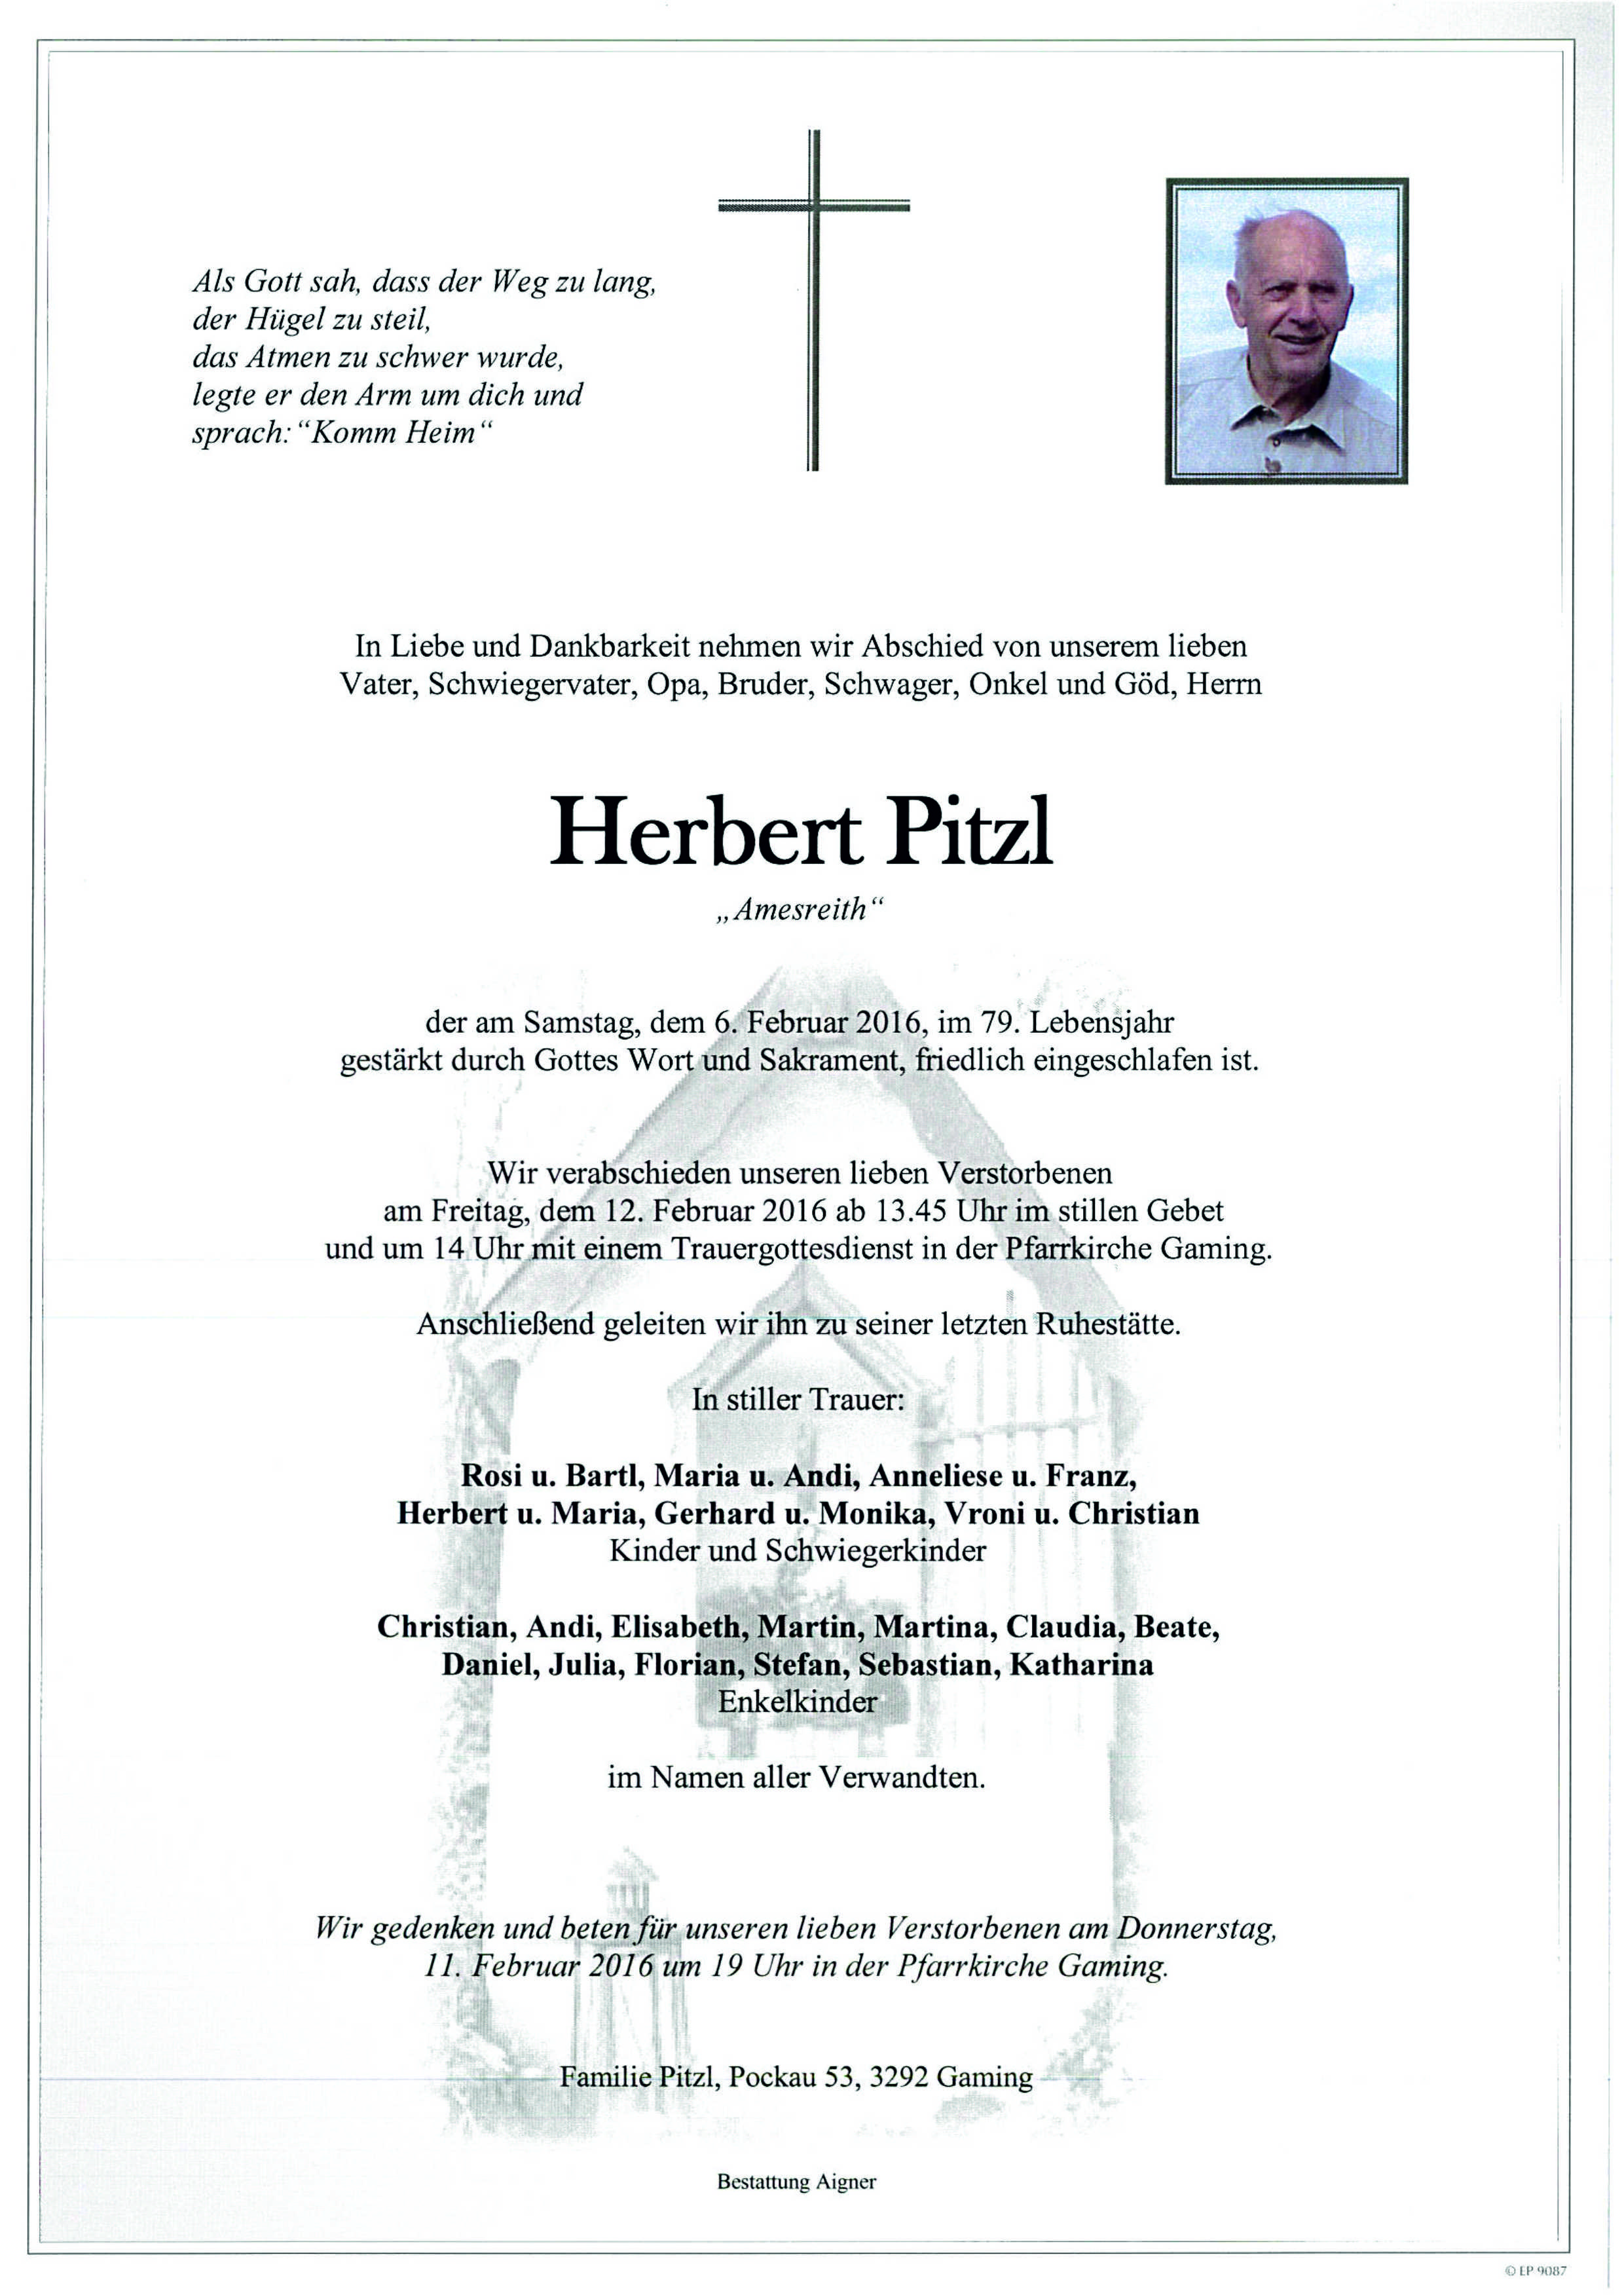 Herbert Pitzl